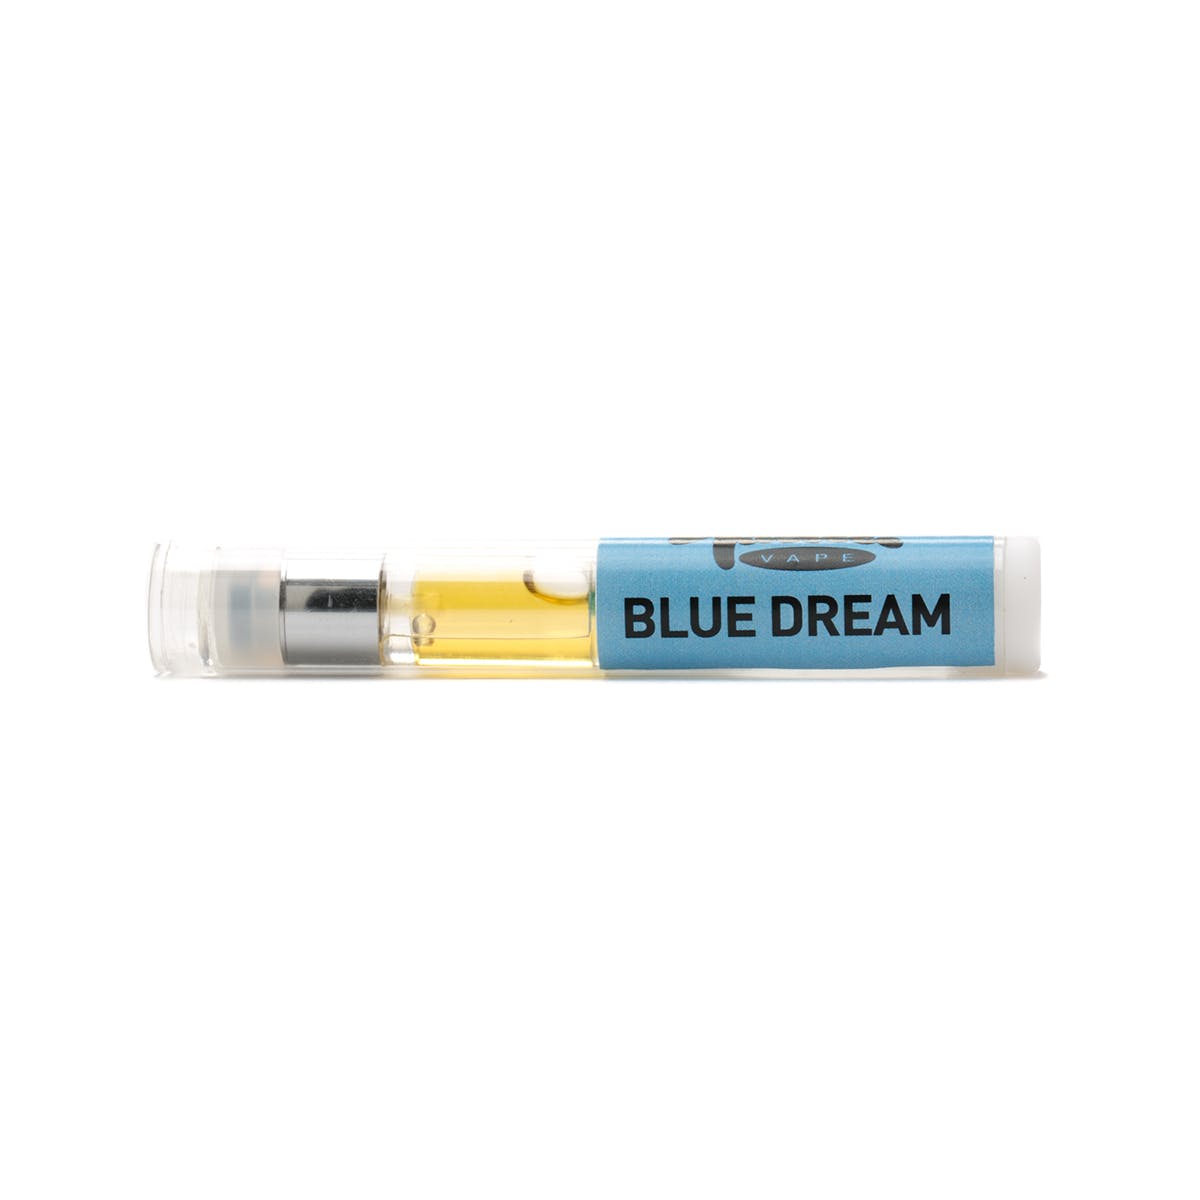 Blue Dream Tasteee Cartridge